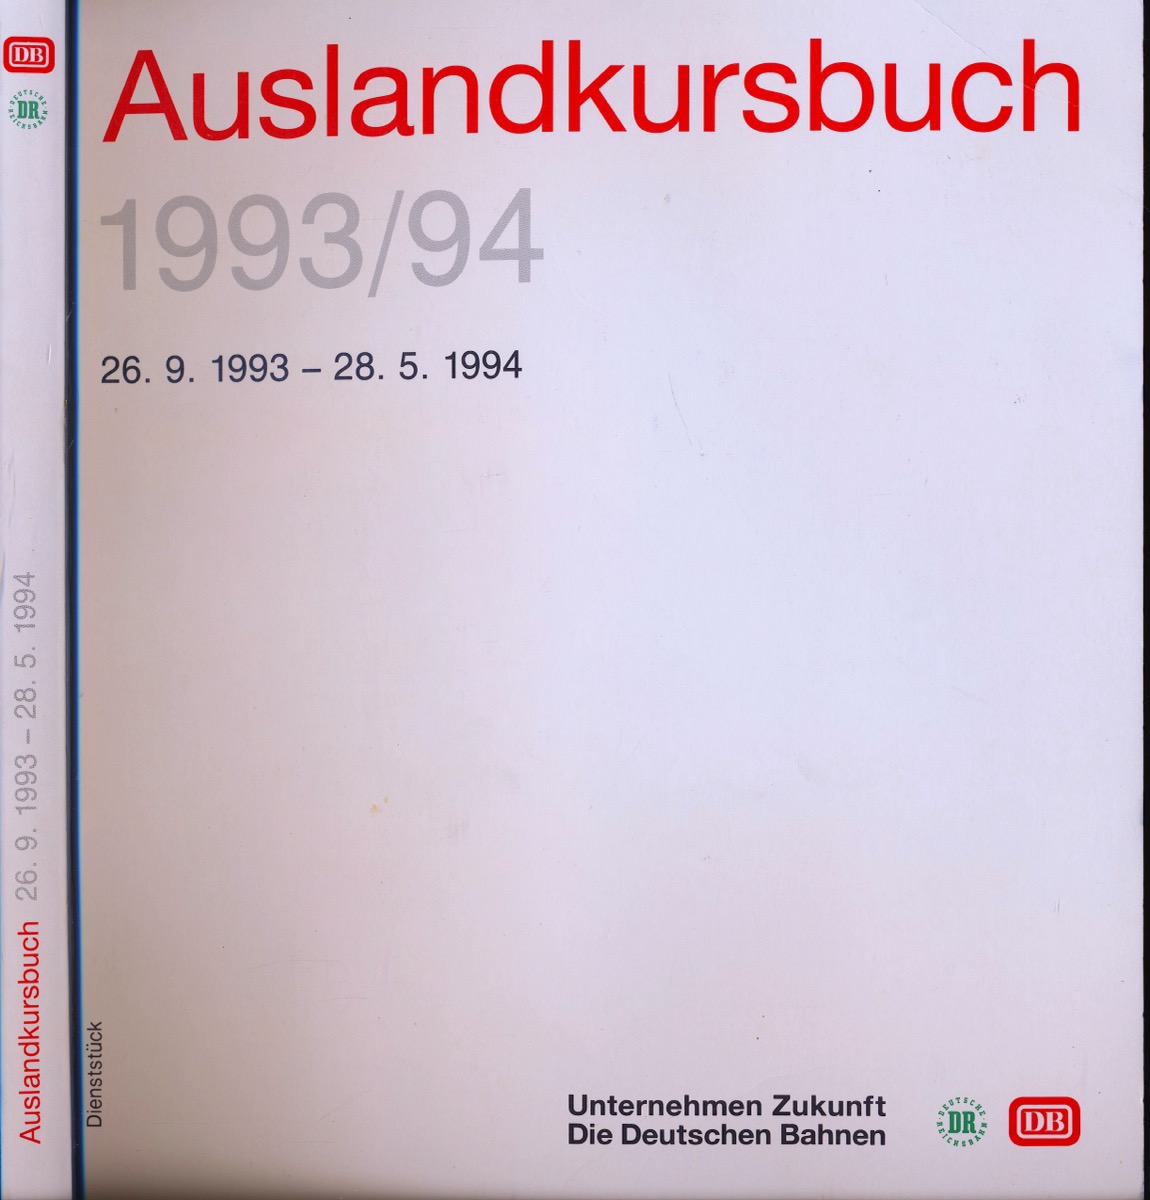 DEUTSCHE BAHN (Hrg.)  Deutsche Bahn (DB) Auslandskursbuch 1993/94, gültig vom 26.9.1993 bis 28.5.1994. 